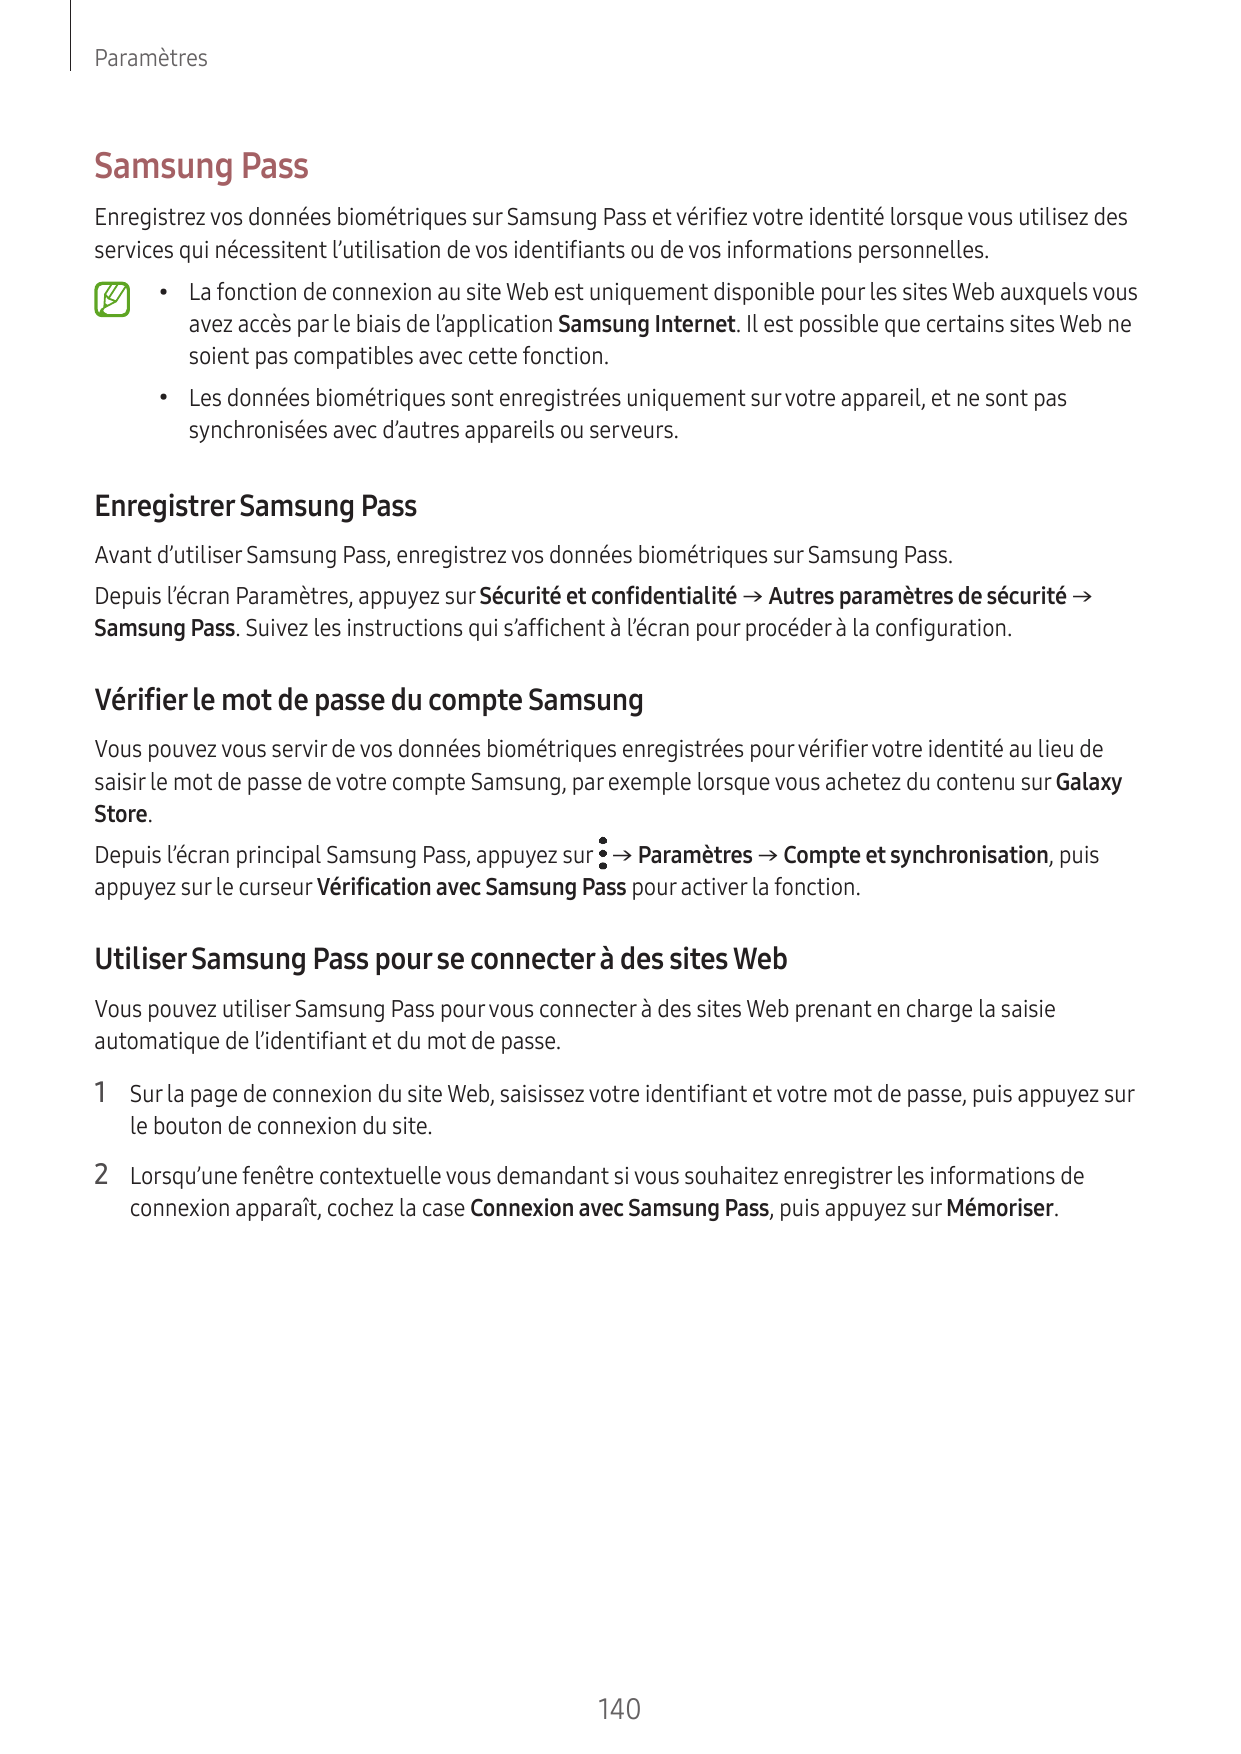 ParamètresSamsung PassEnregistrez vos données biométriques sur Samsung Pass et vérifiez votre identité lorsque vous utilisez des